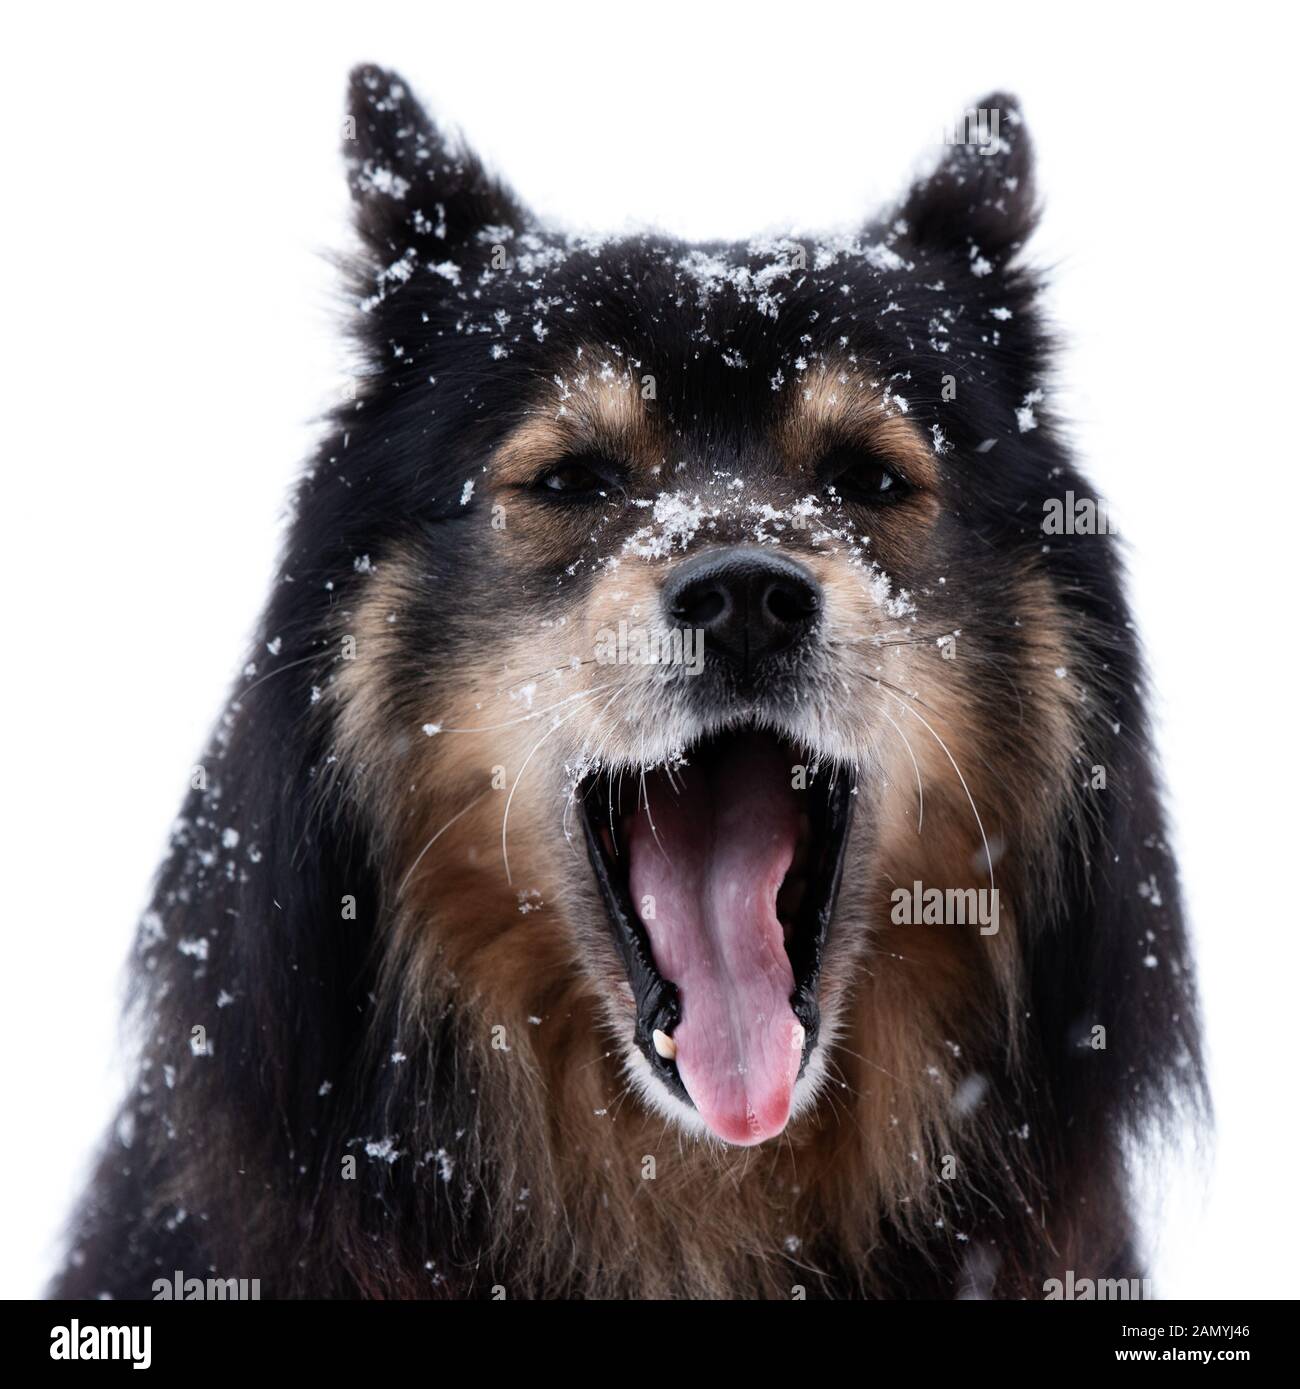 Lapphund finlandese in nevicata e ululati, la testa di fronte alla fotocamera contro uno sfondo bianco. Foto Stock